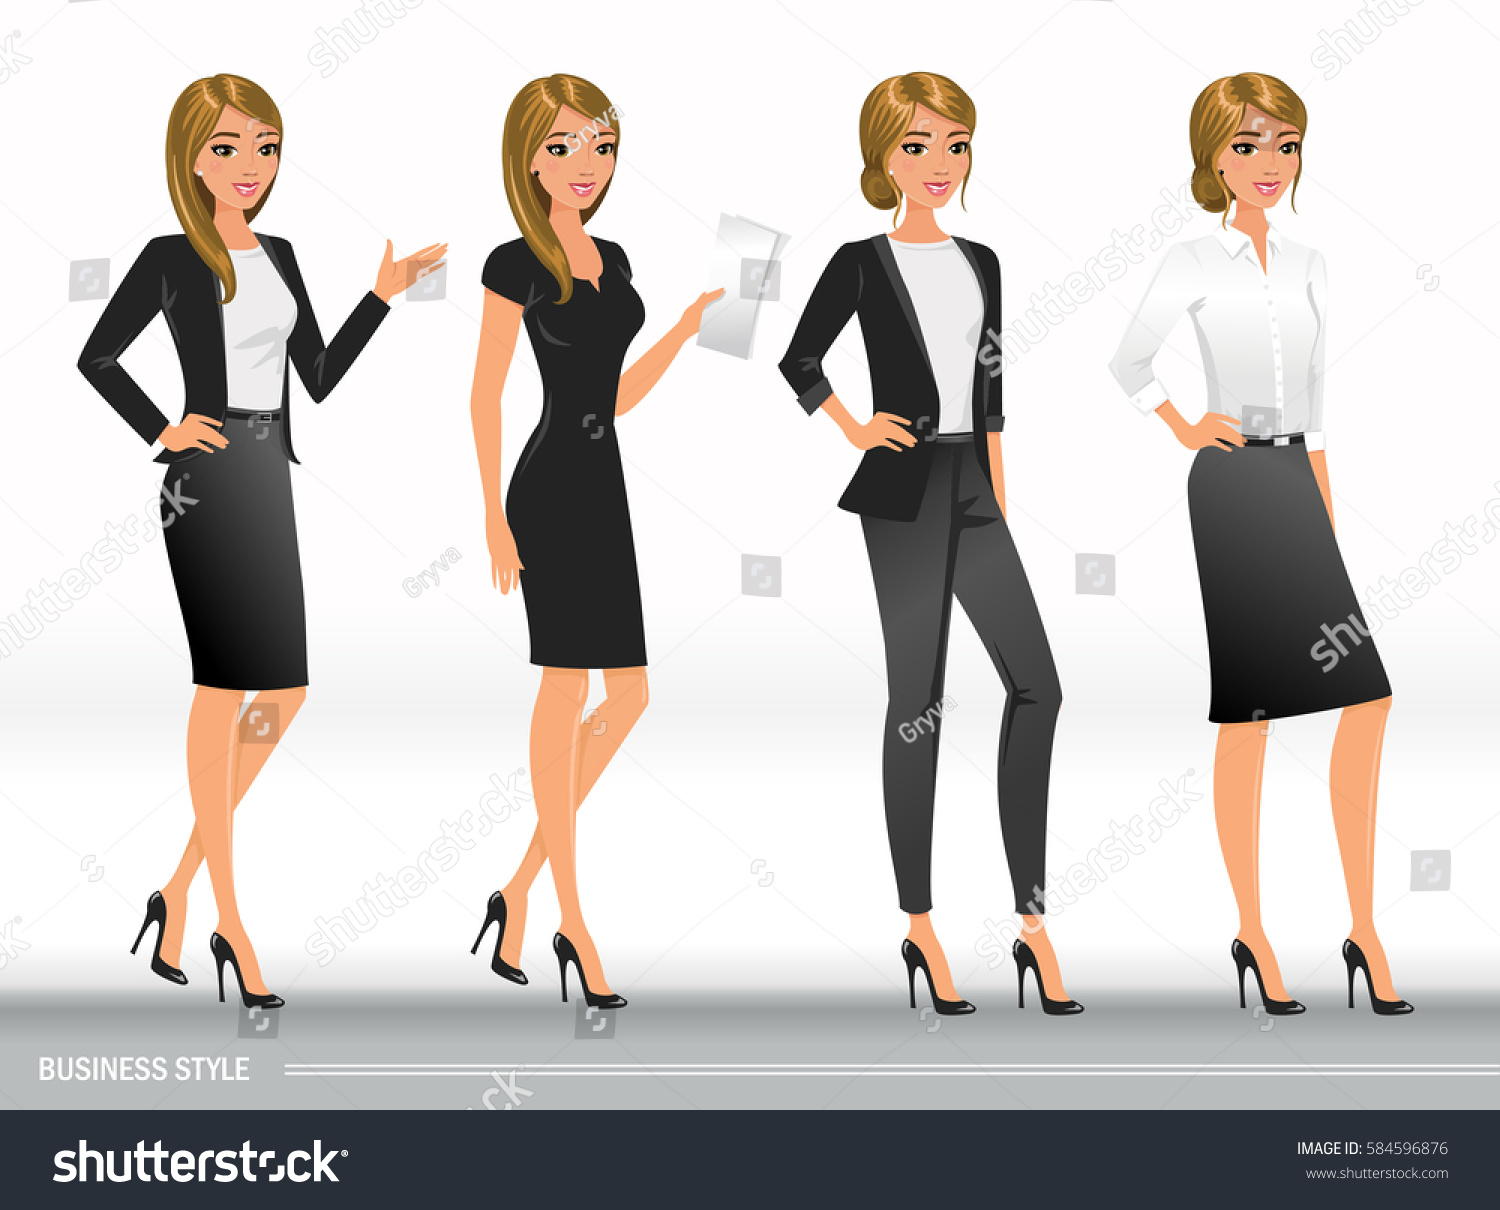 formal dress code for women